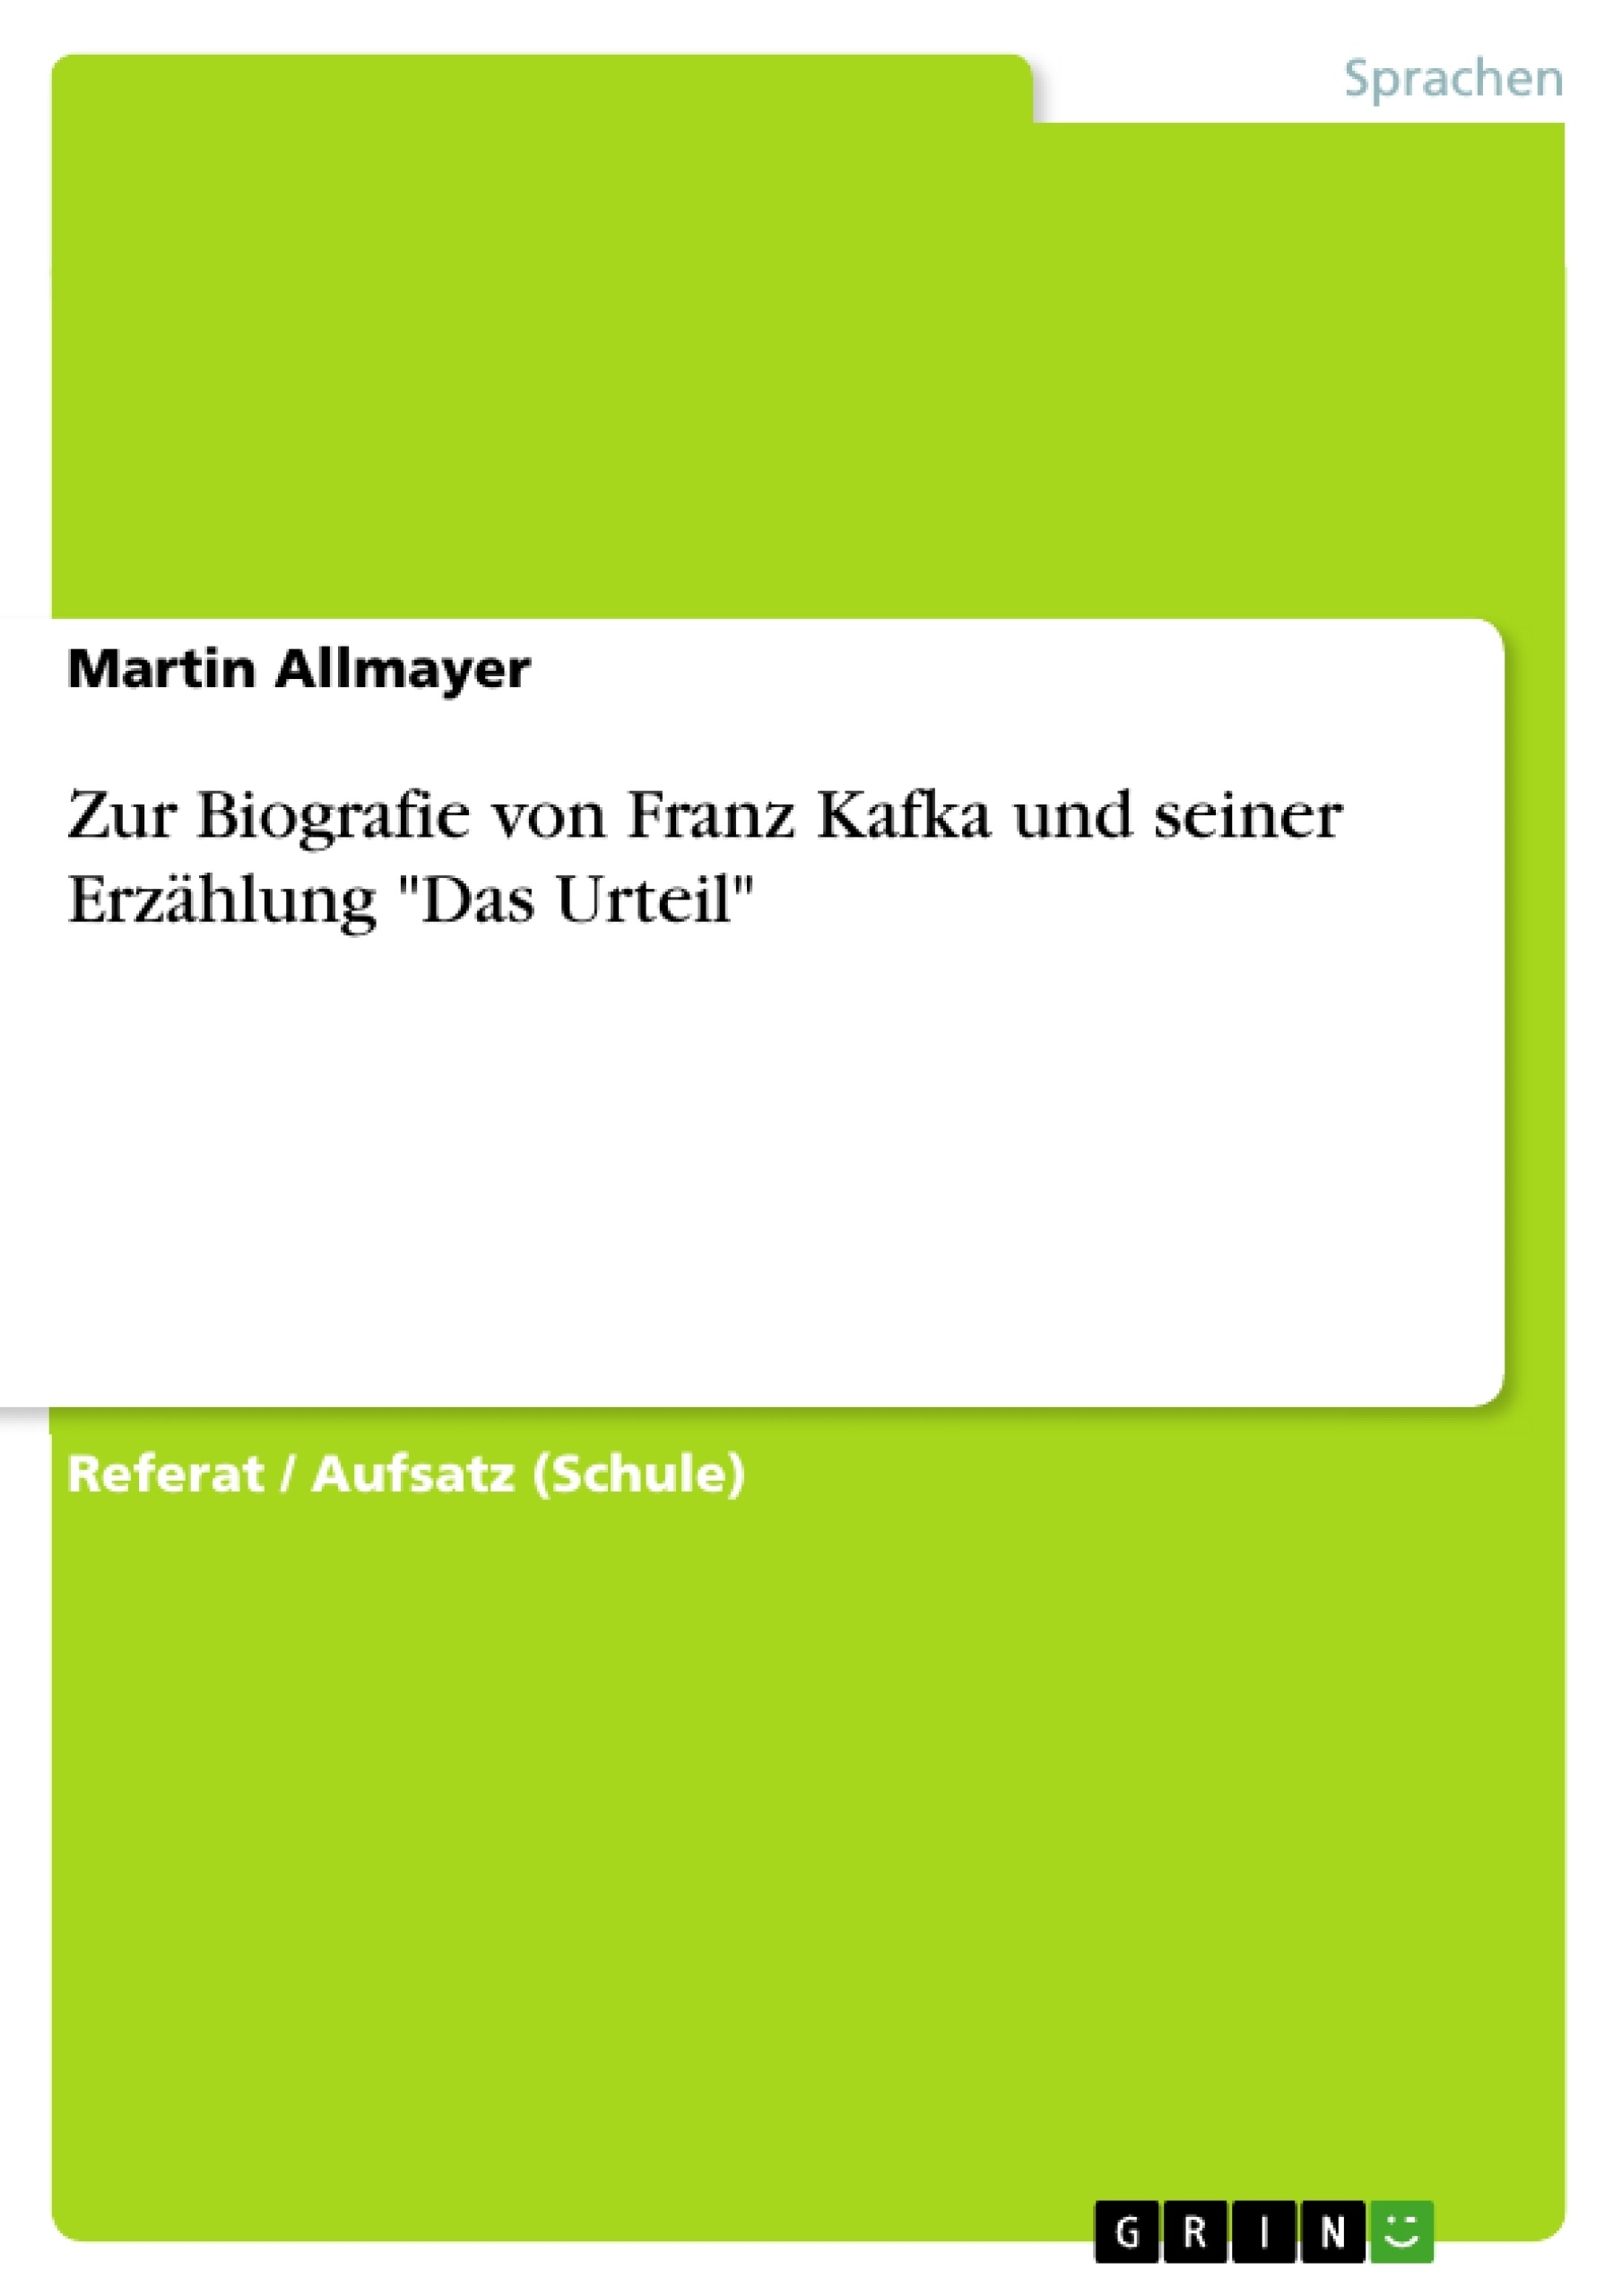 Titre: Zur Biografie von Franz Kafka und seiner Erzählung "Das Urteil"